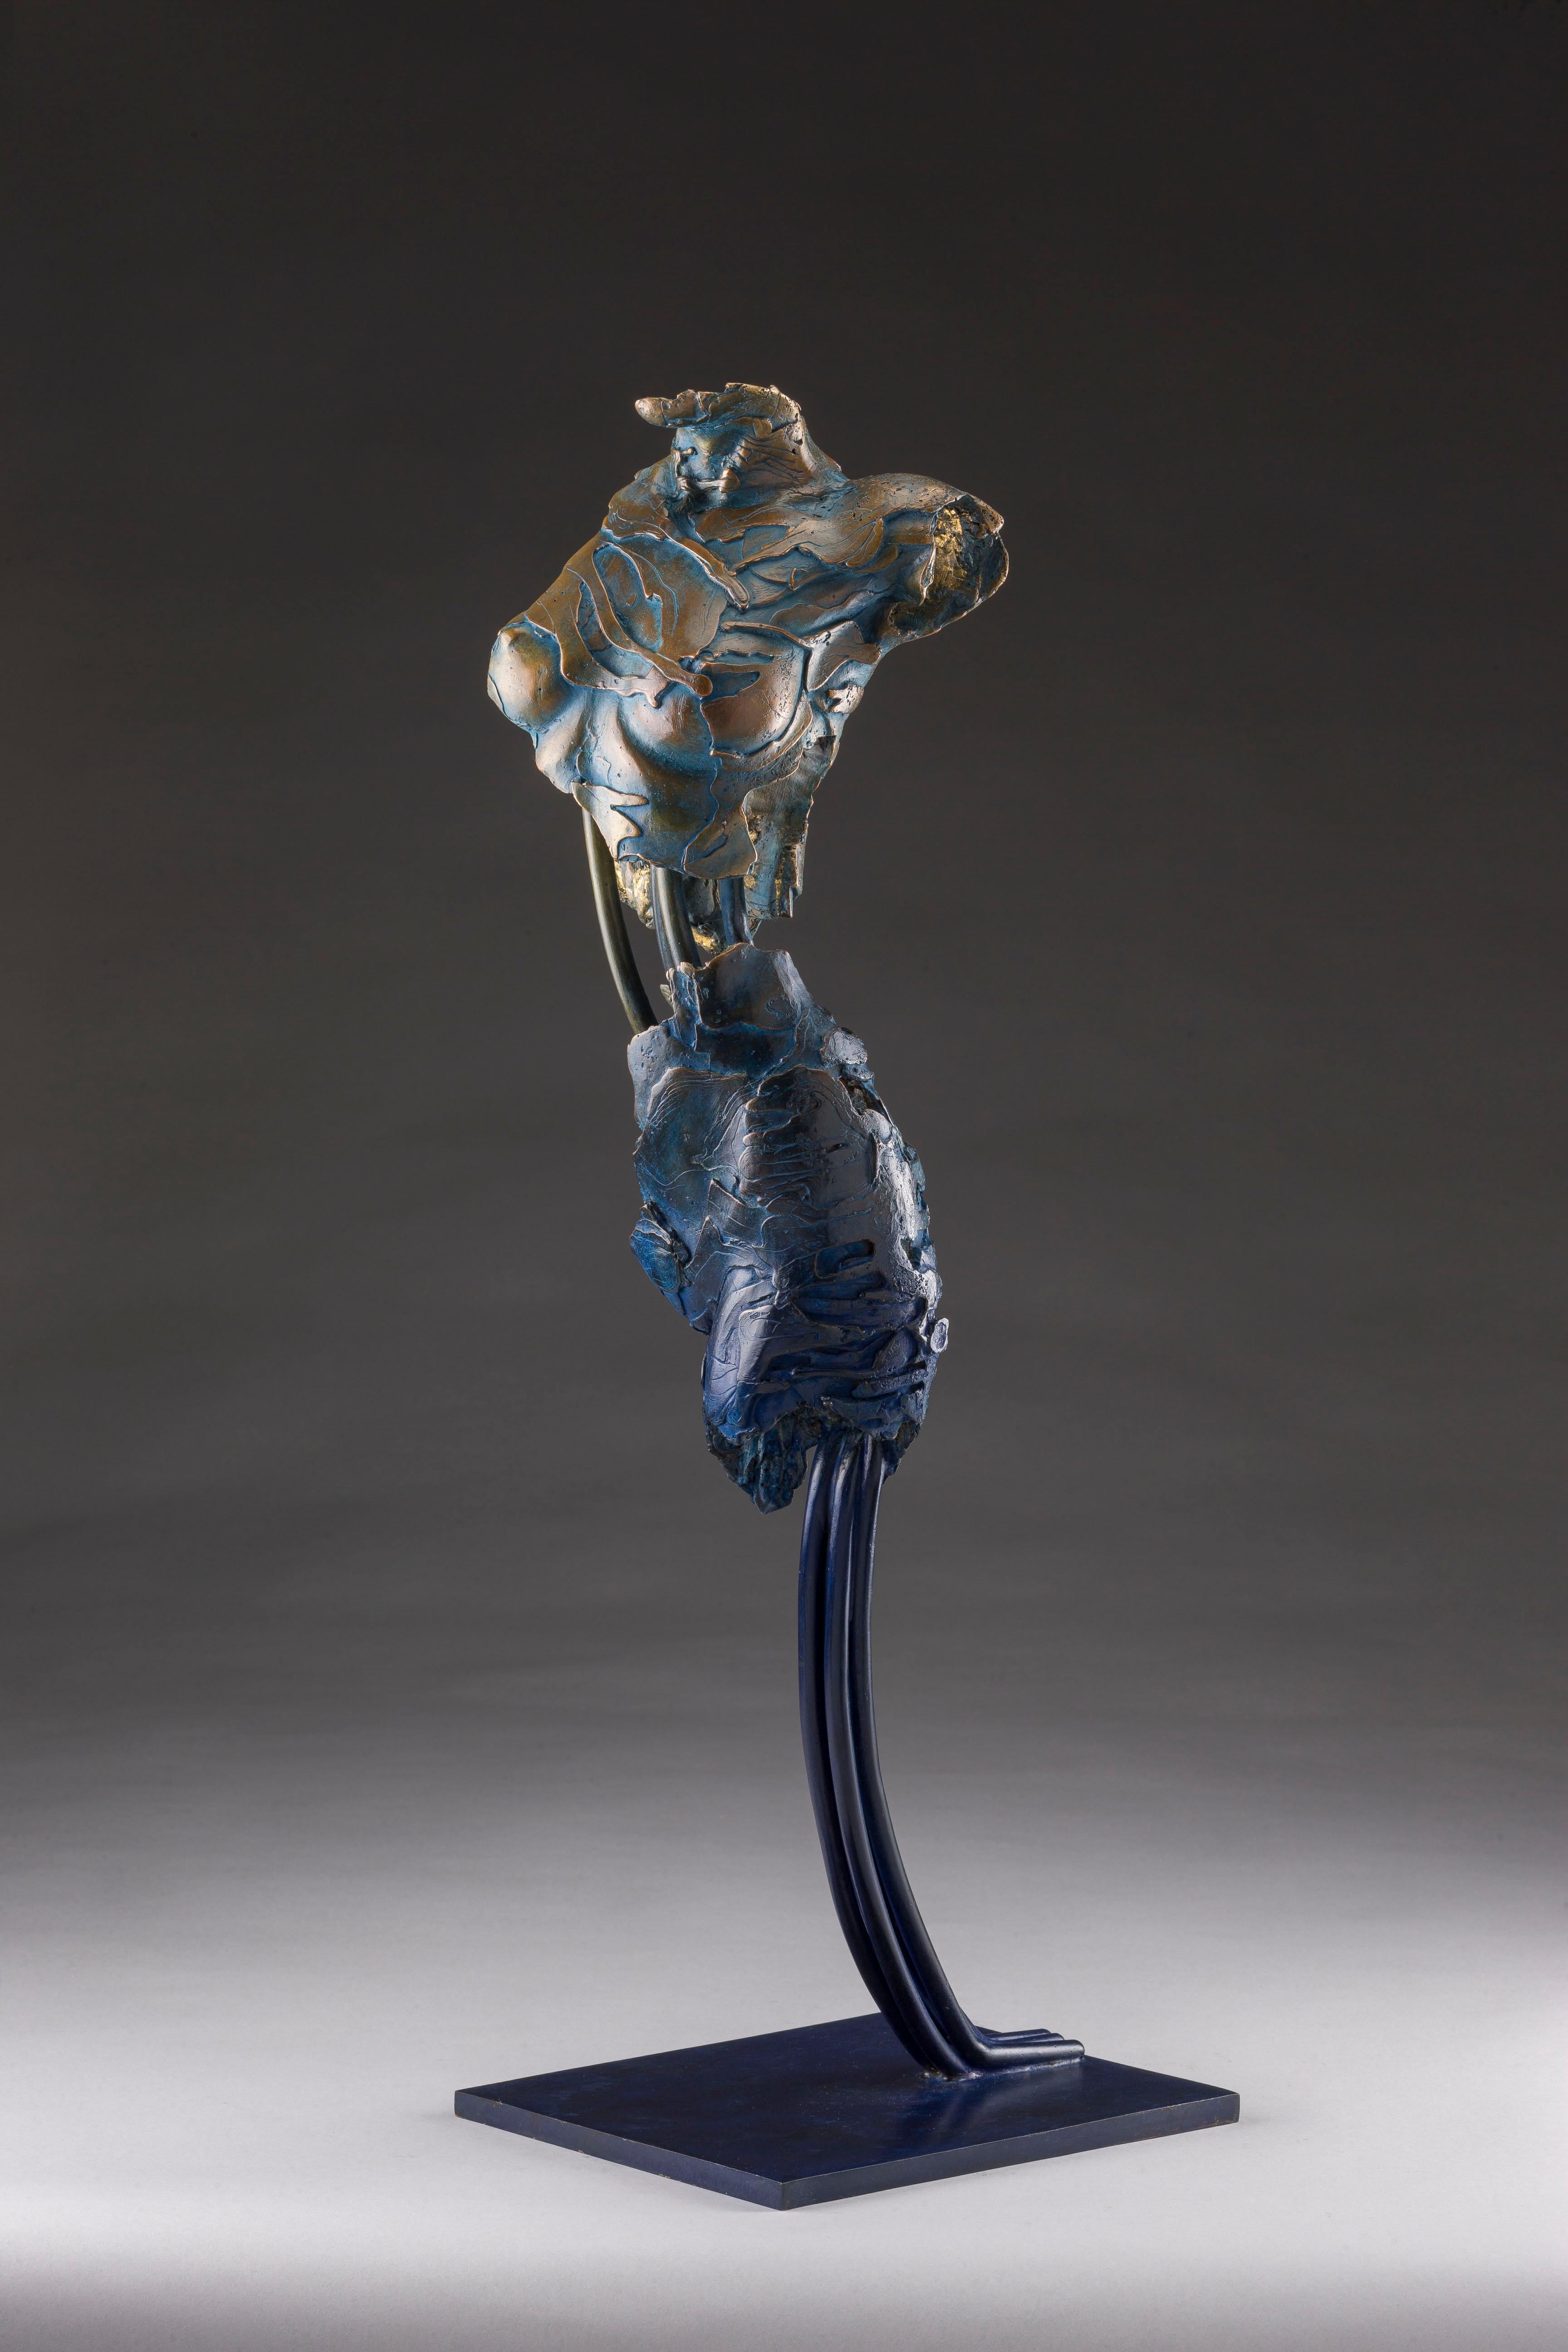 Blake Ward Figurative Sculpture - Angel Inanna (Sumerian Goddess of Love and War)